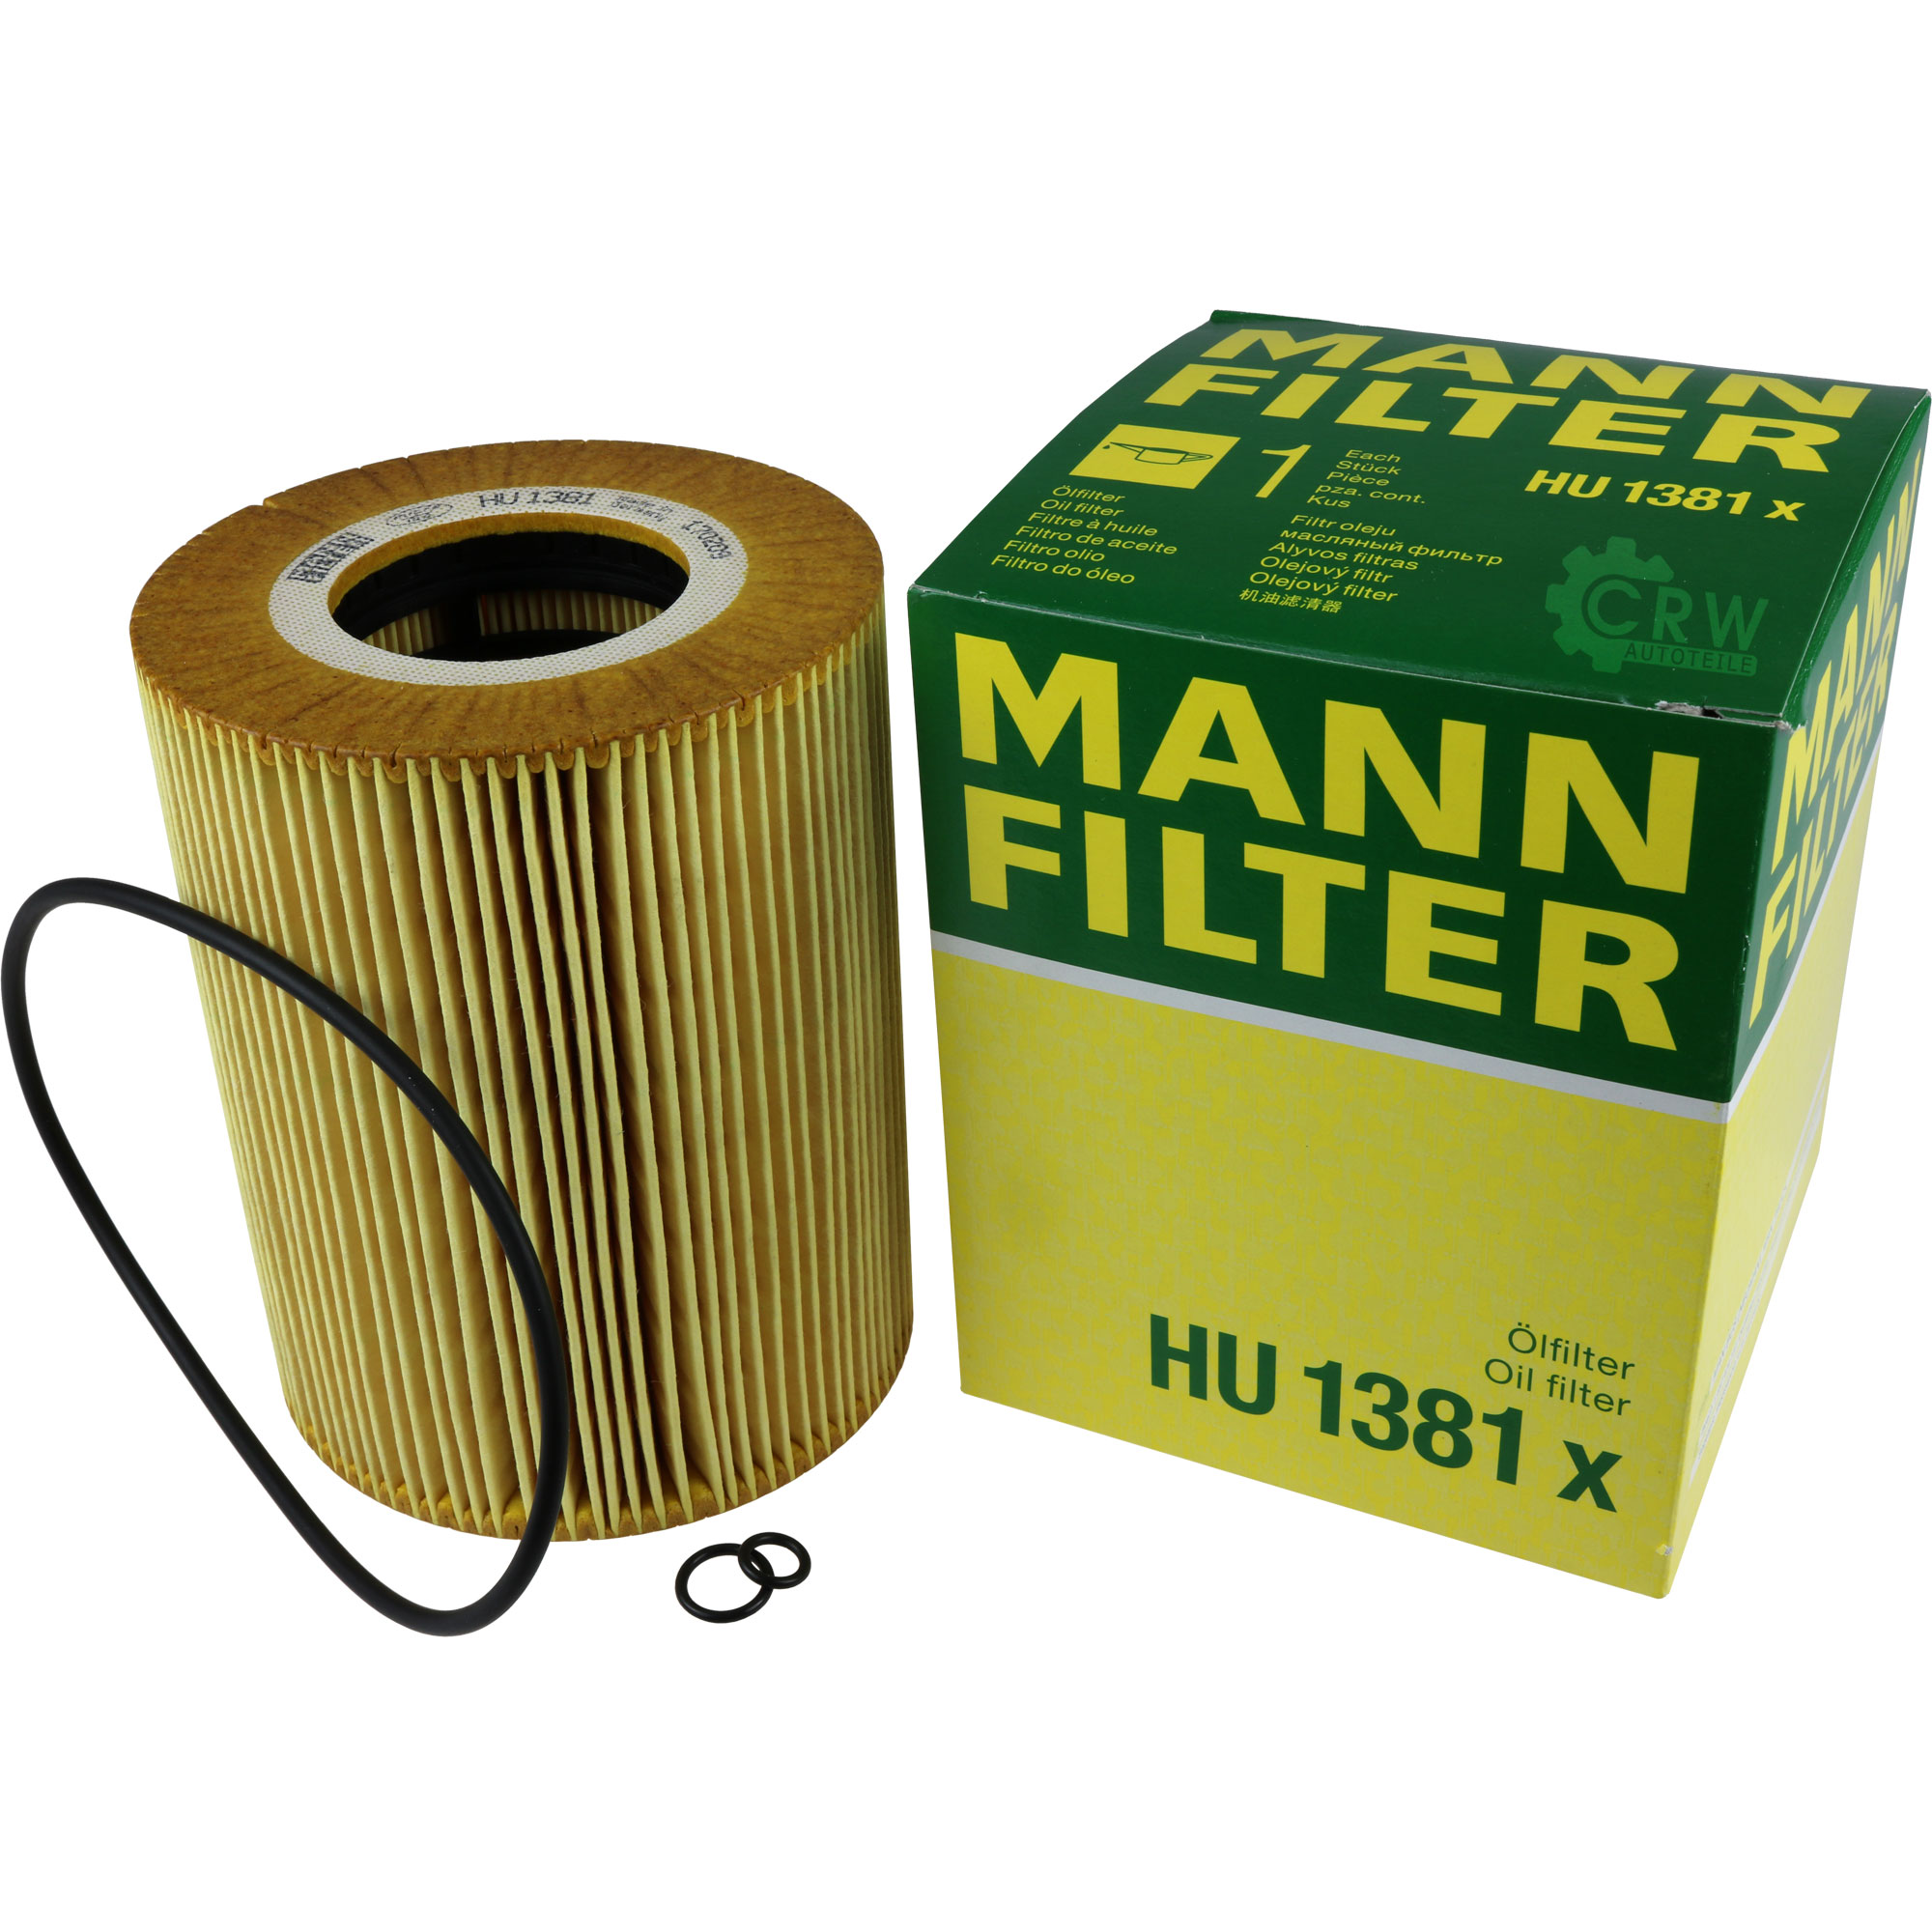 MANN-FILTER Ölfilter Oelfilter HU 1381 x Oil Filter